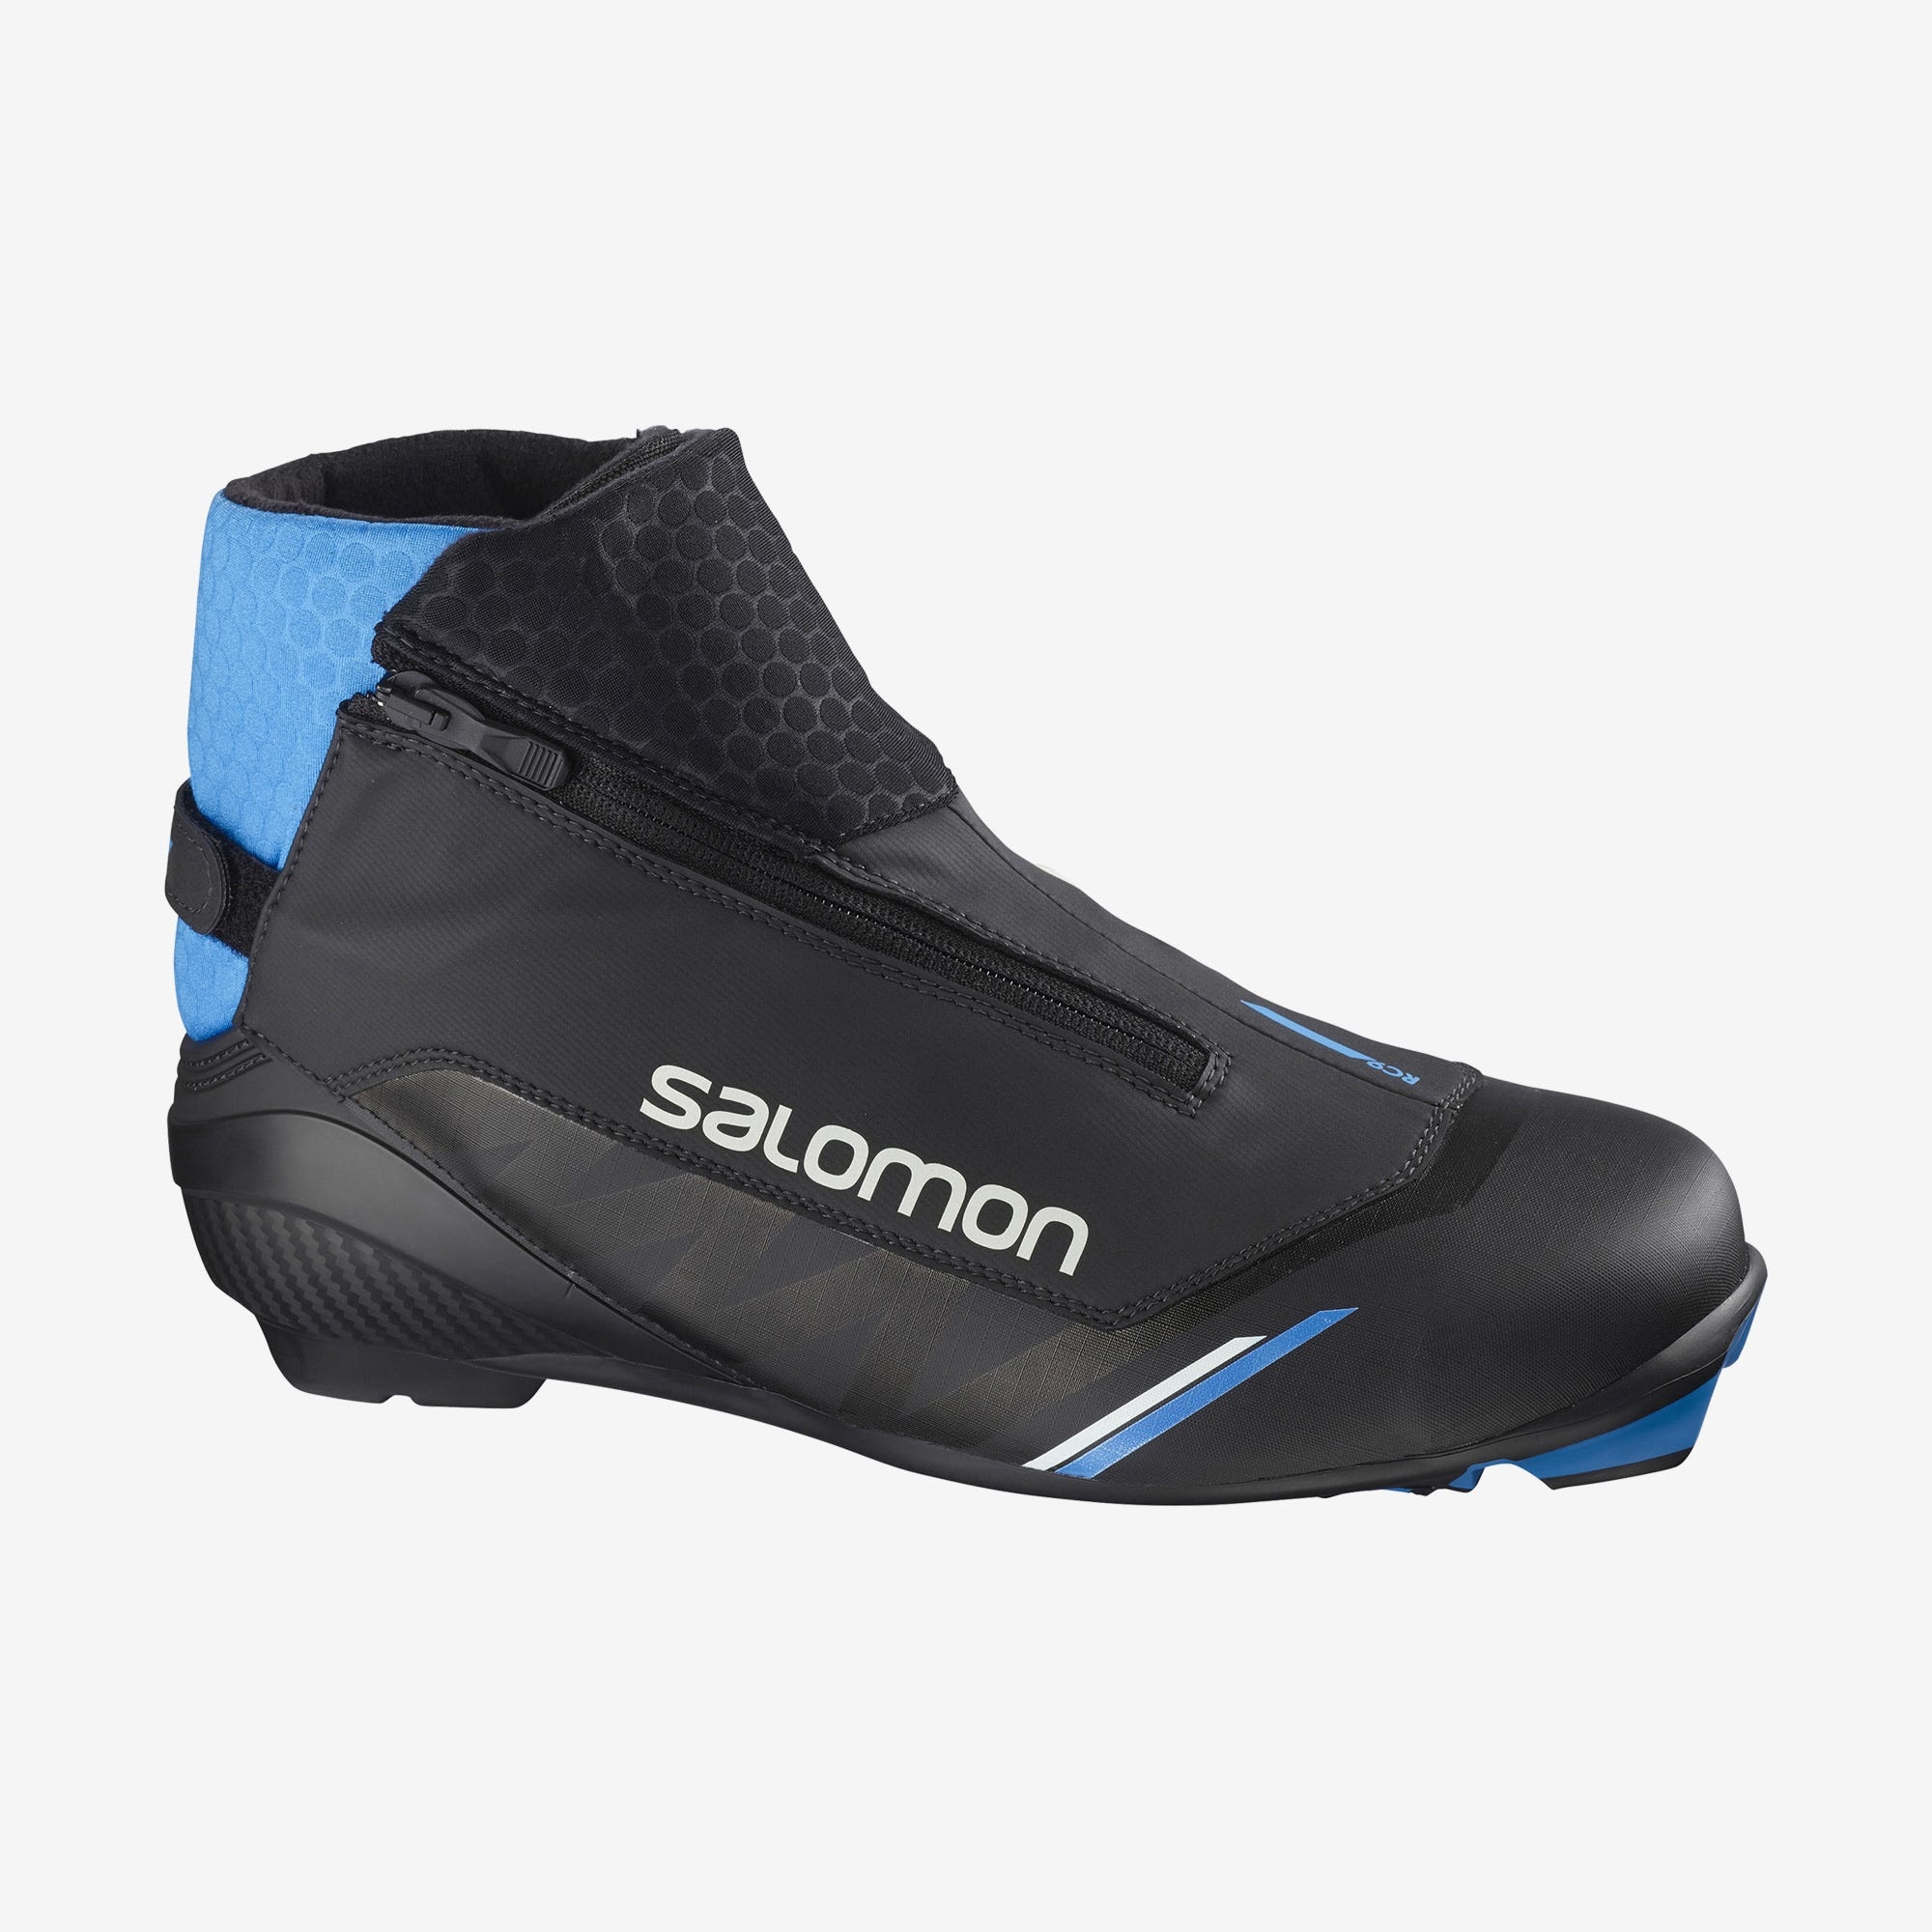 Salomon RC9 Nocturne Prolink Classic Ski Boot - Adventure365 Ontario